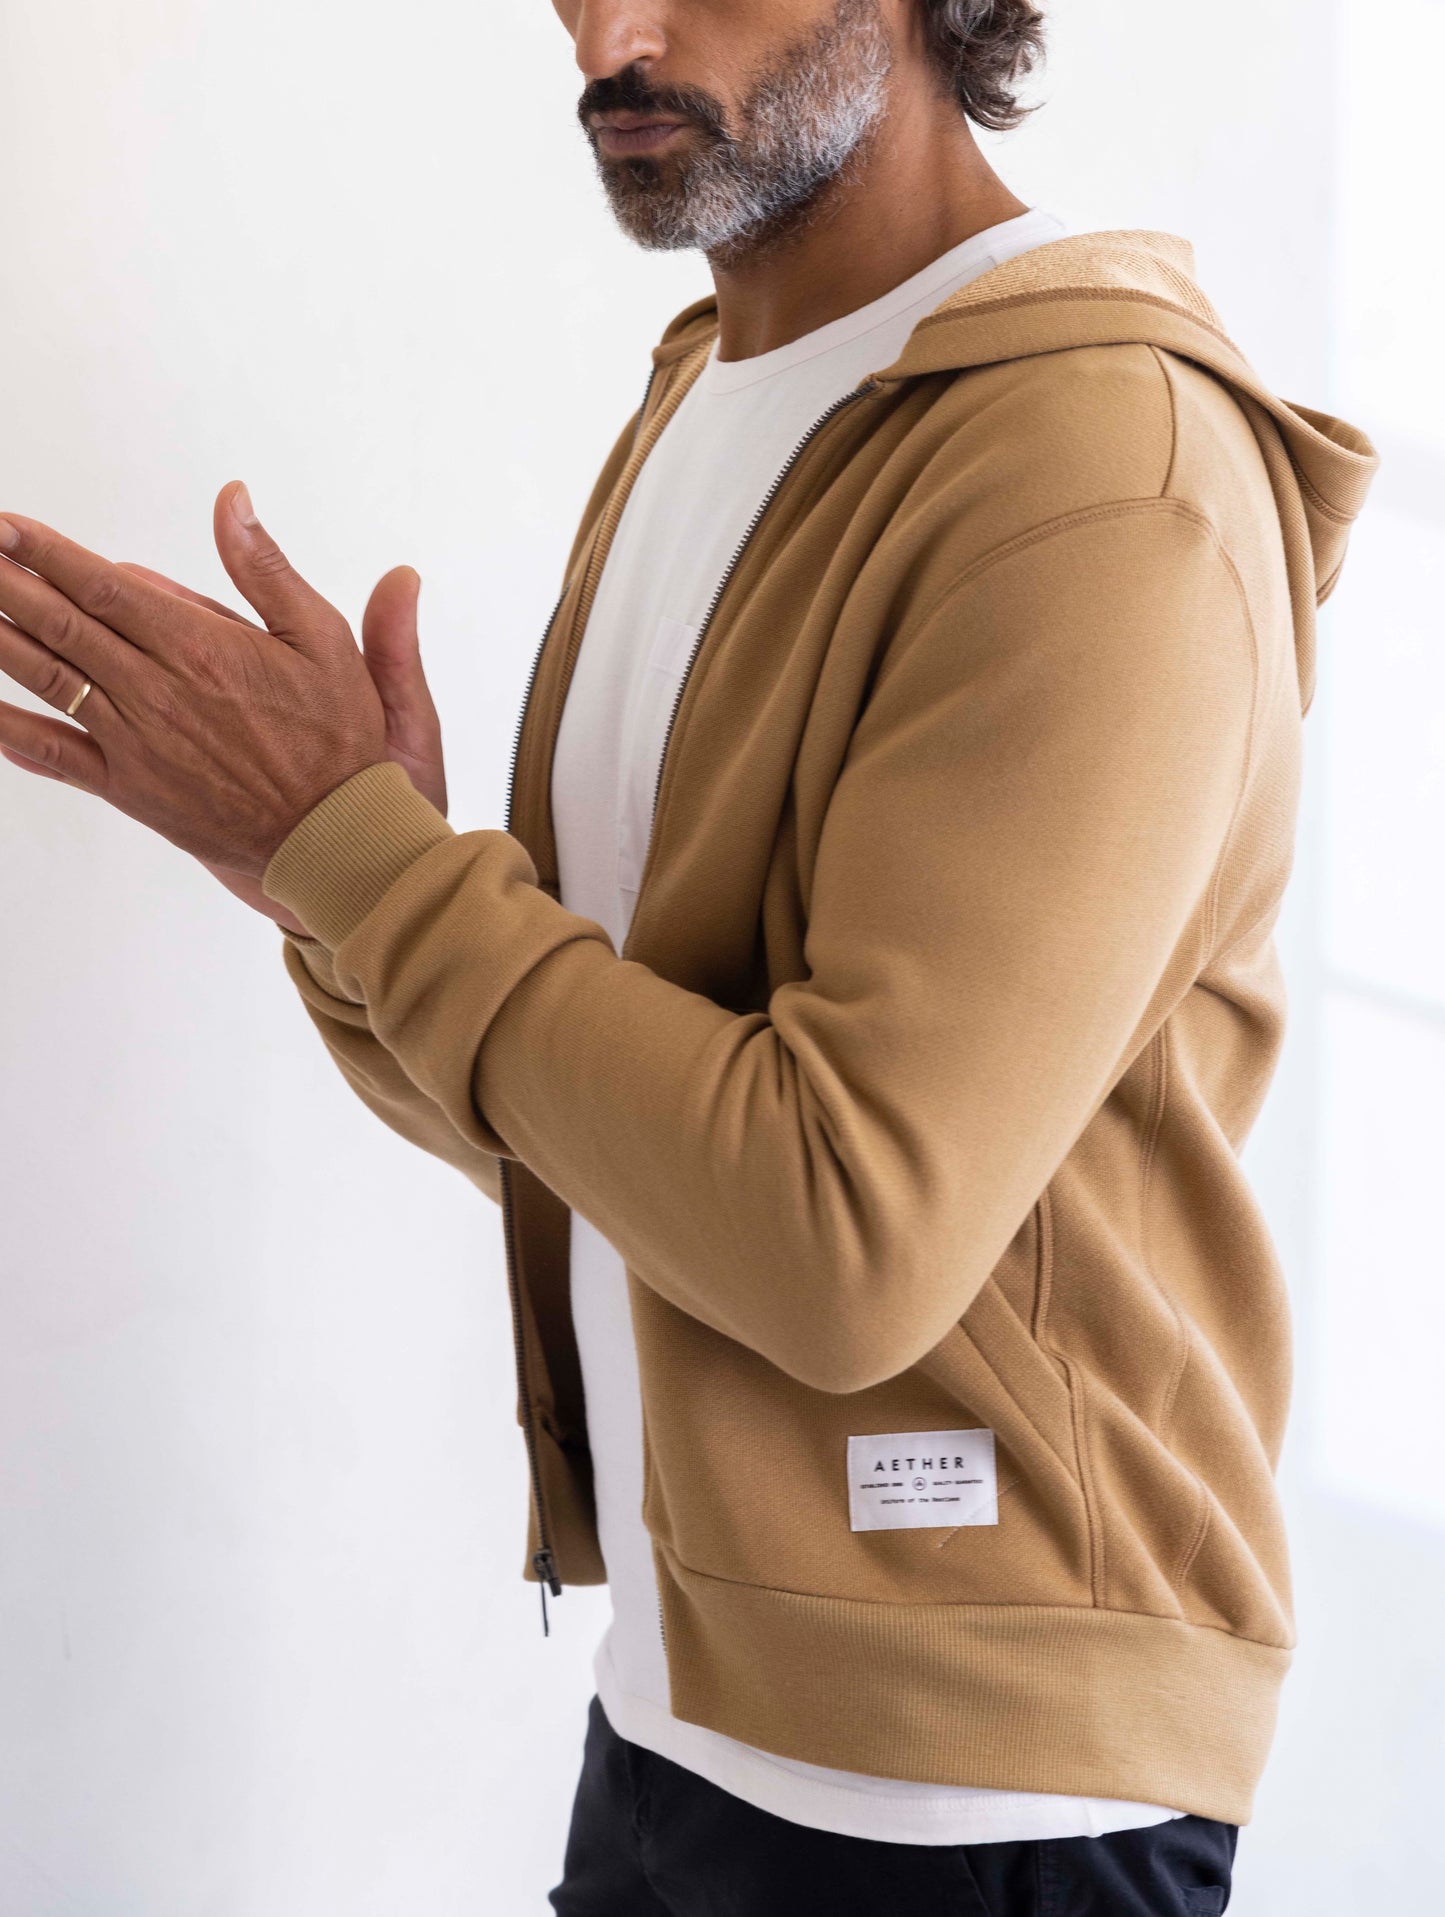 man wearing a brown full zip hoodie